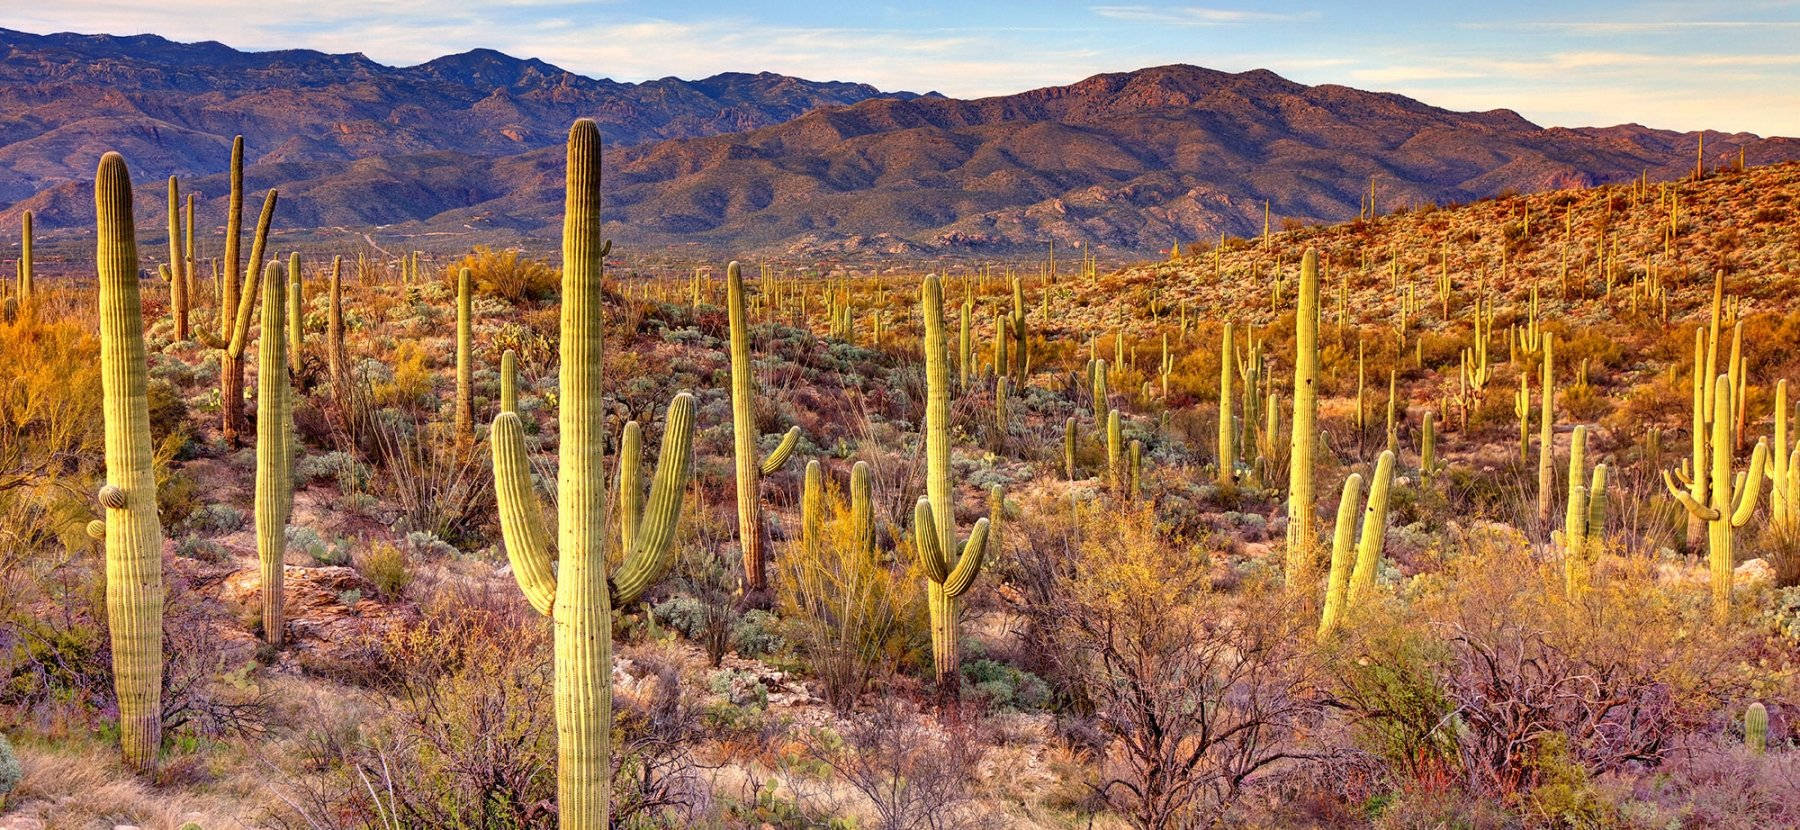 Jardínde Cactus En El Desierto De Arizona Fondo de pantalla